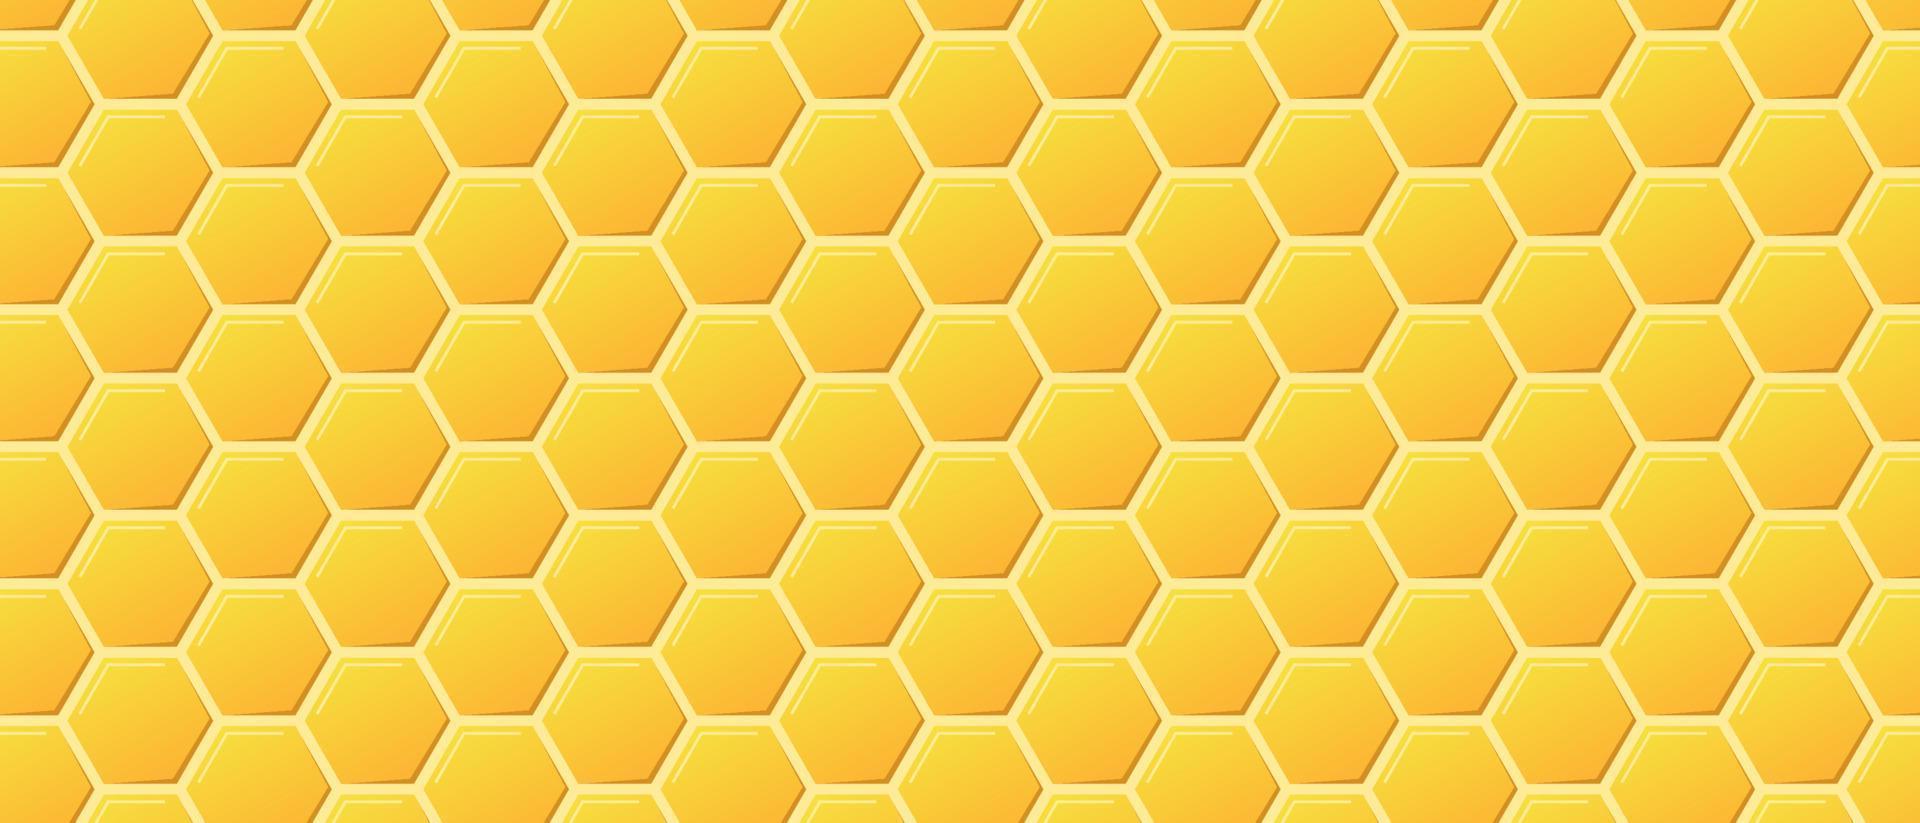 goldene honigkammgitterstruktur und geometrische sechseckige bienenwaben. nahtlose textur der sechseckigen zellen des goldhonigs. heller hintergrund der waben. Vektor-Illustration vektor